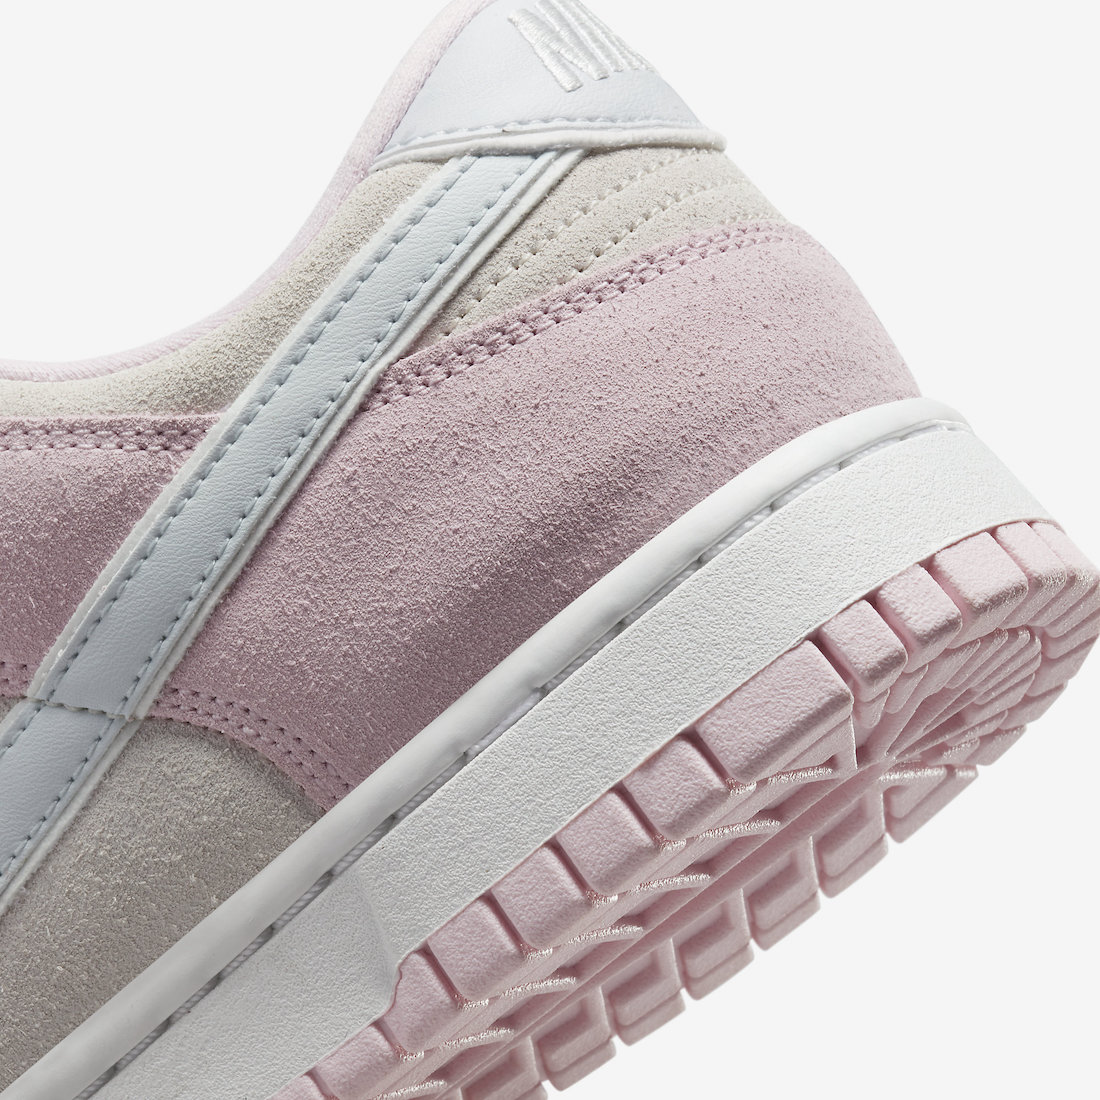 Nike Dunk Low Pink Foam Suede DV3054-600 Release Date Info